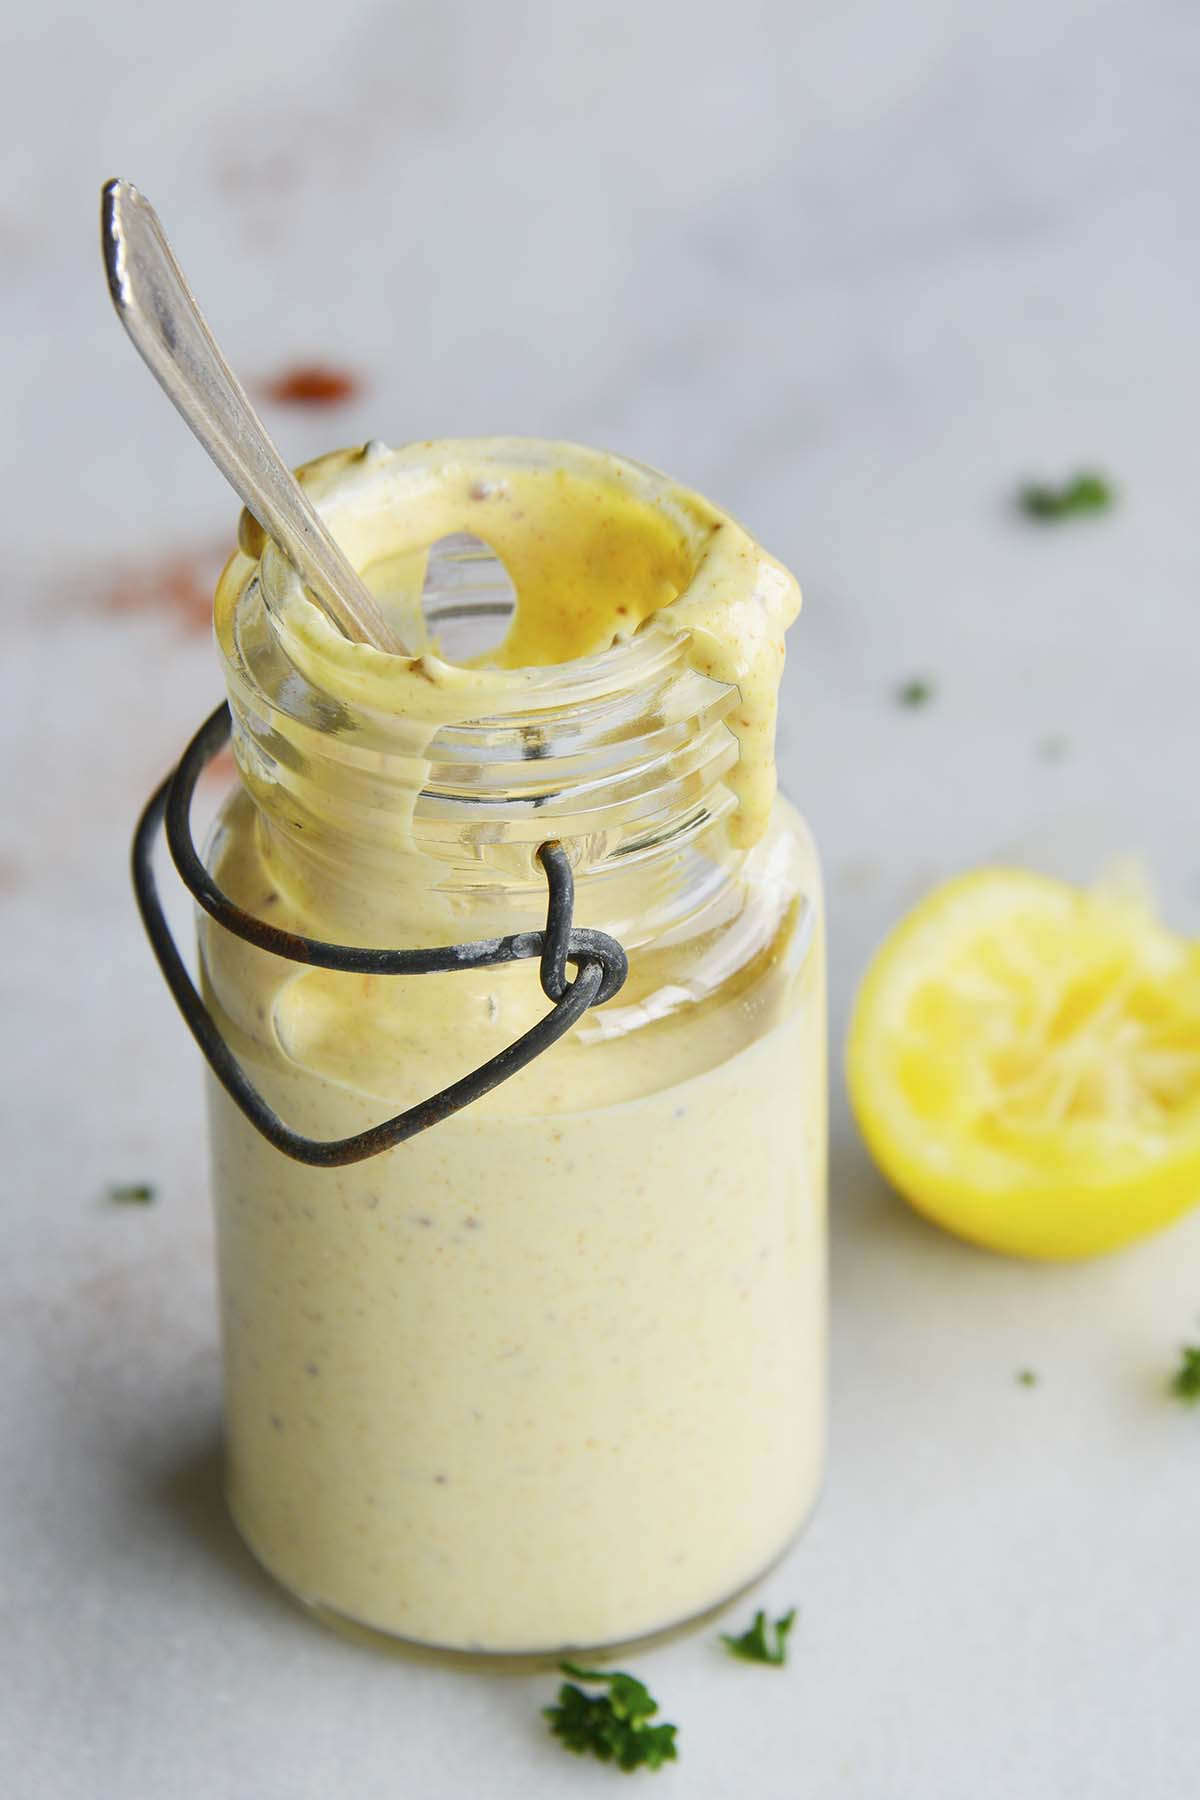 5 minute honey mustard dressing recipe